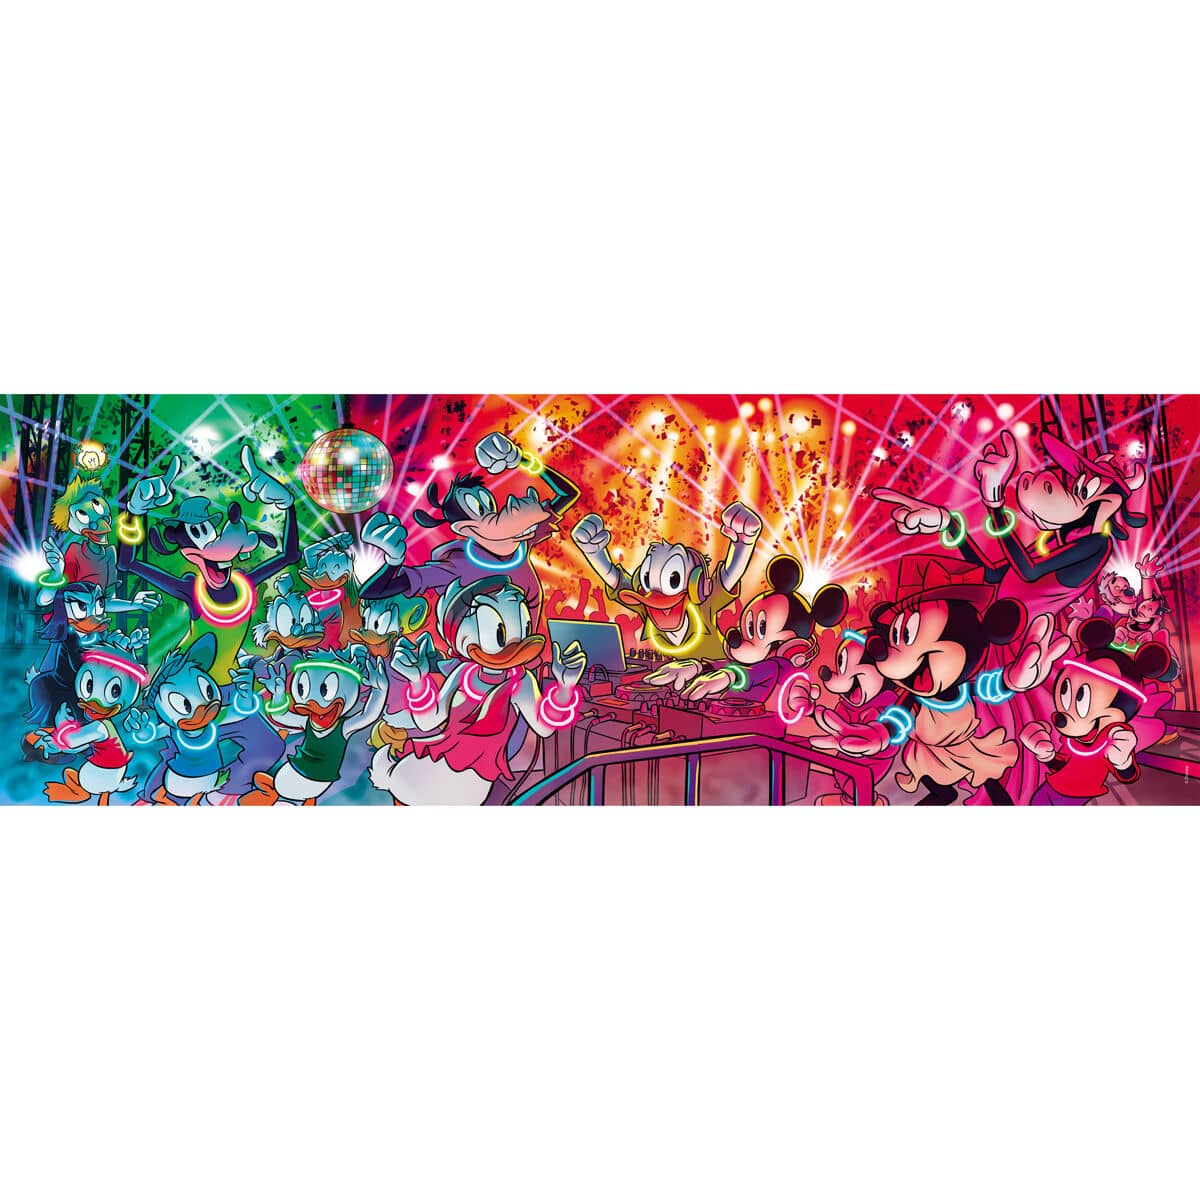 Puzzle Panorama Mickey Disney 1000pzs - Espadas y Más